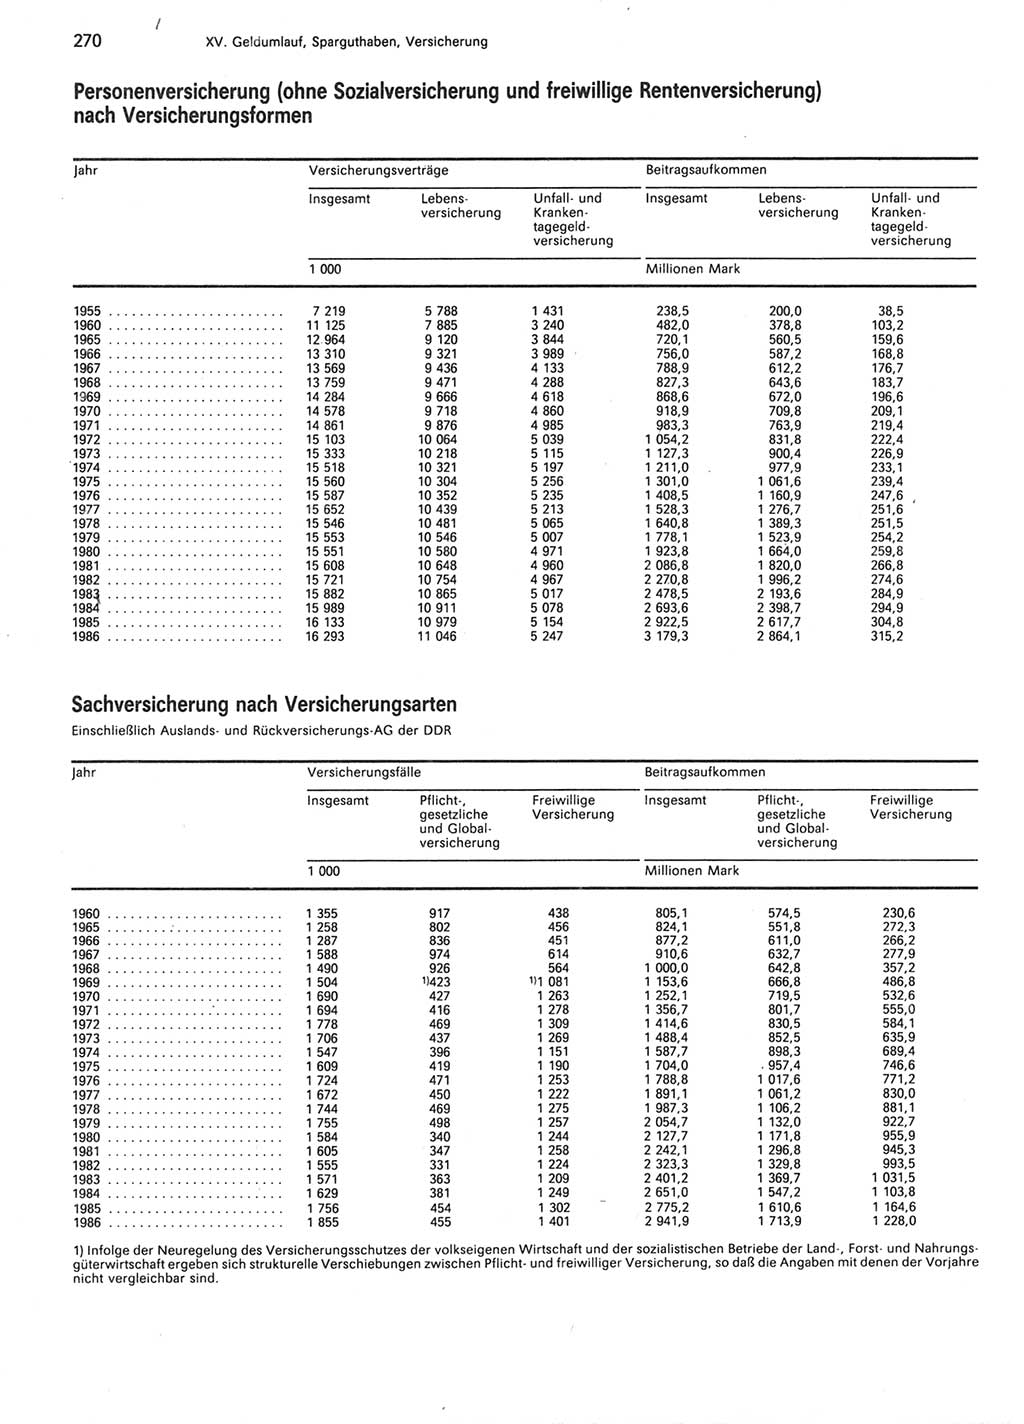 Statistisches Jahrbuch der Deutschen Demokratischen Republik (DDR) 1987, Seite 270 (Stat. Jb. DDR 1987, S. 270)